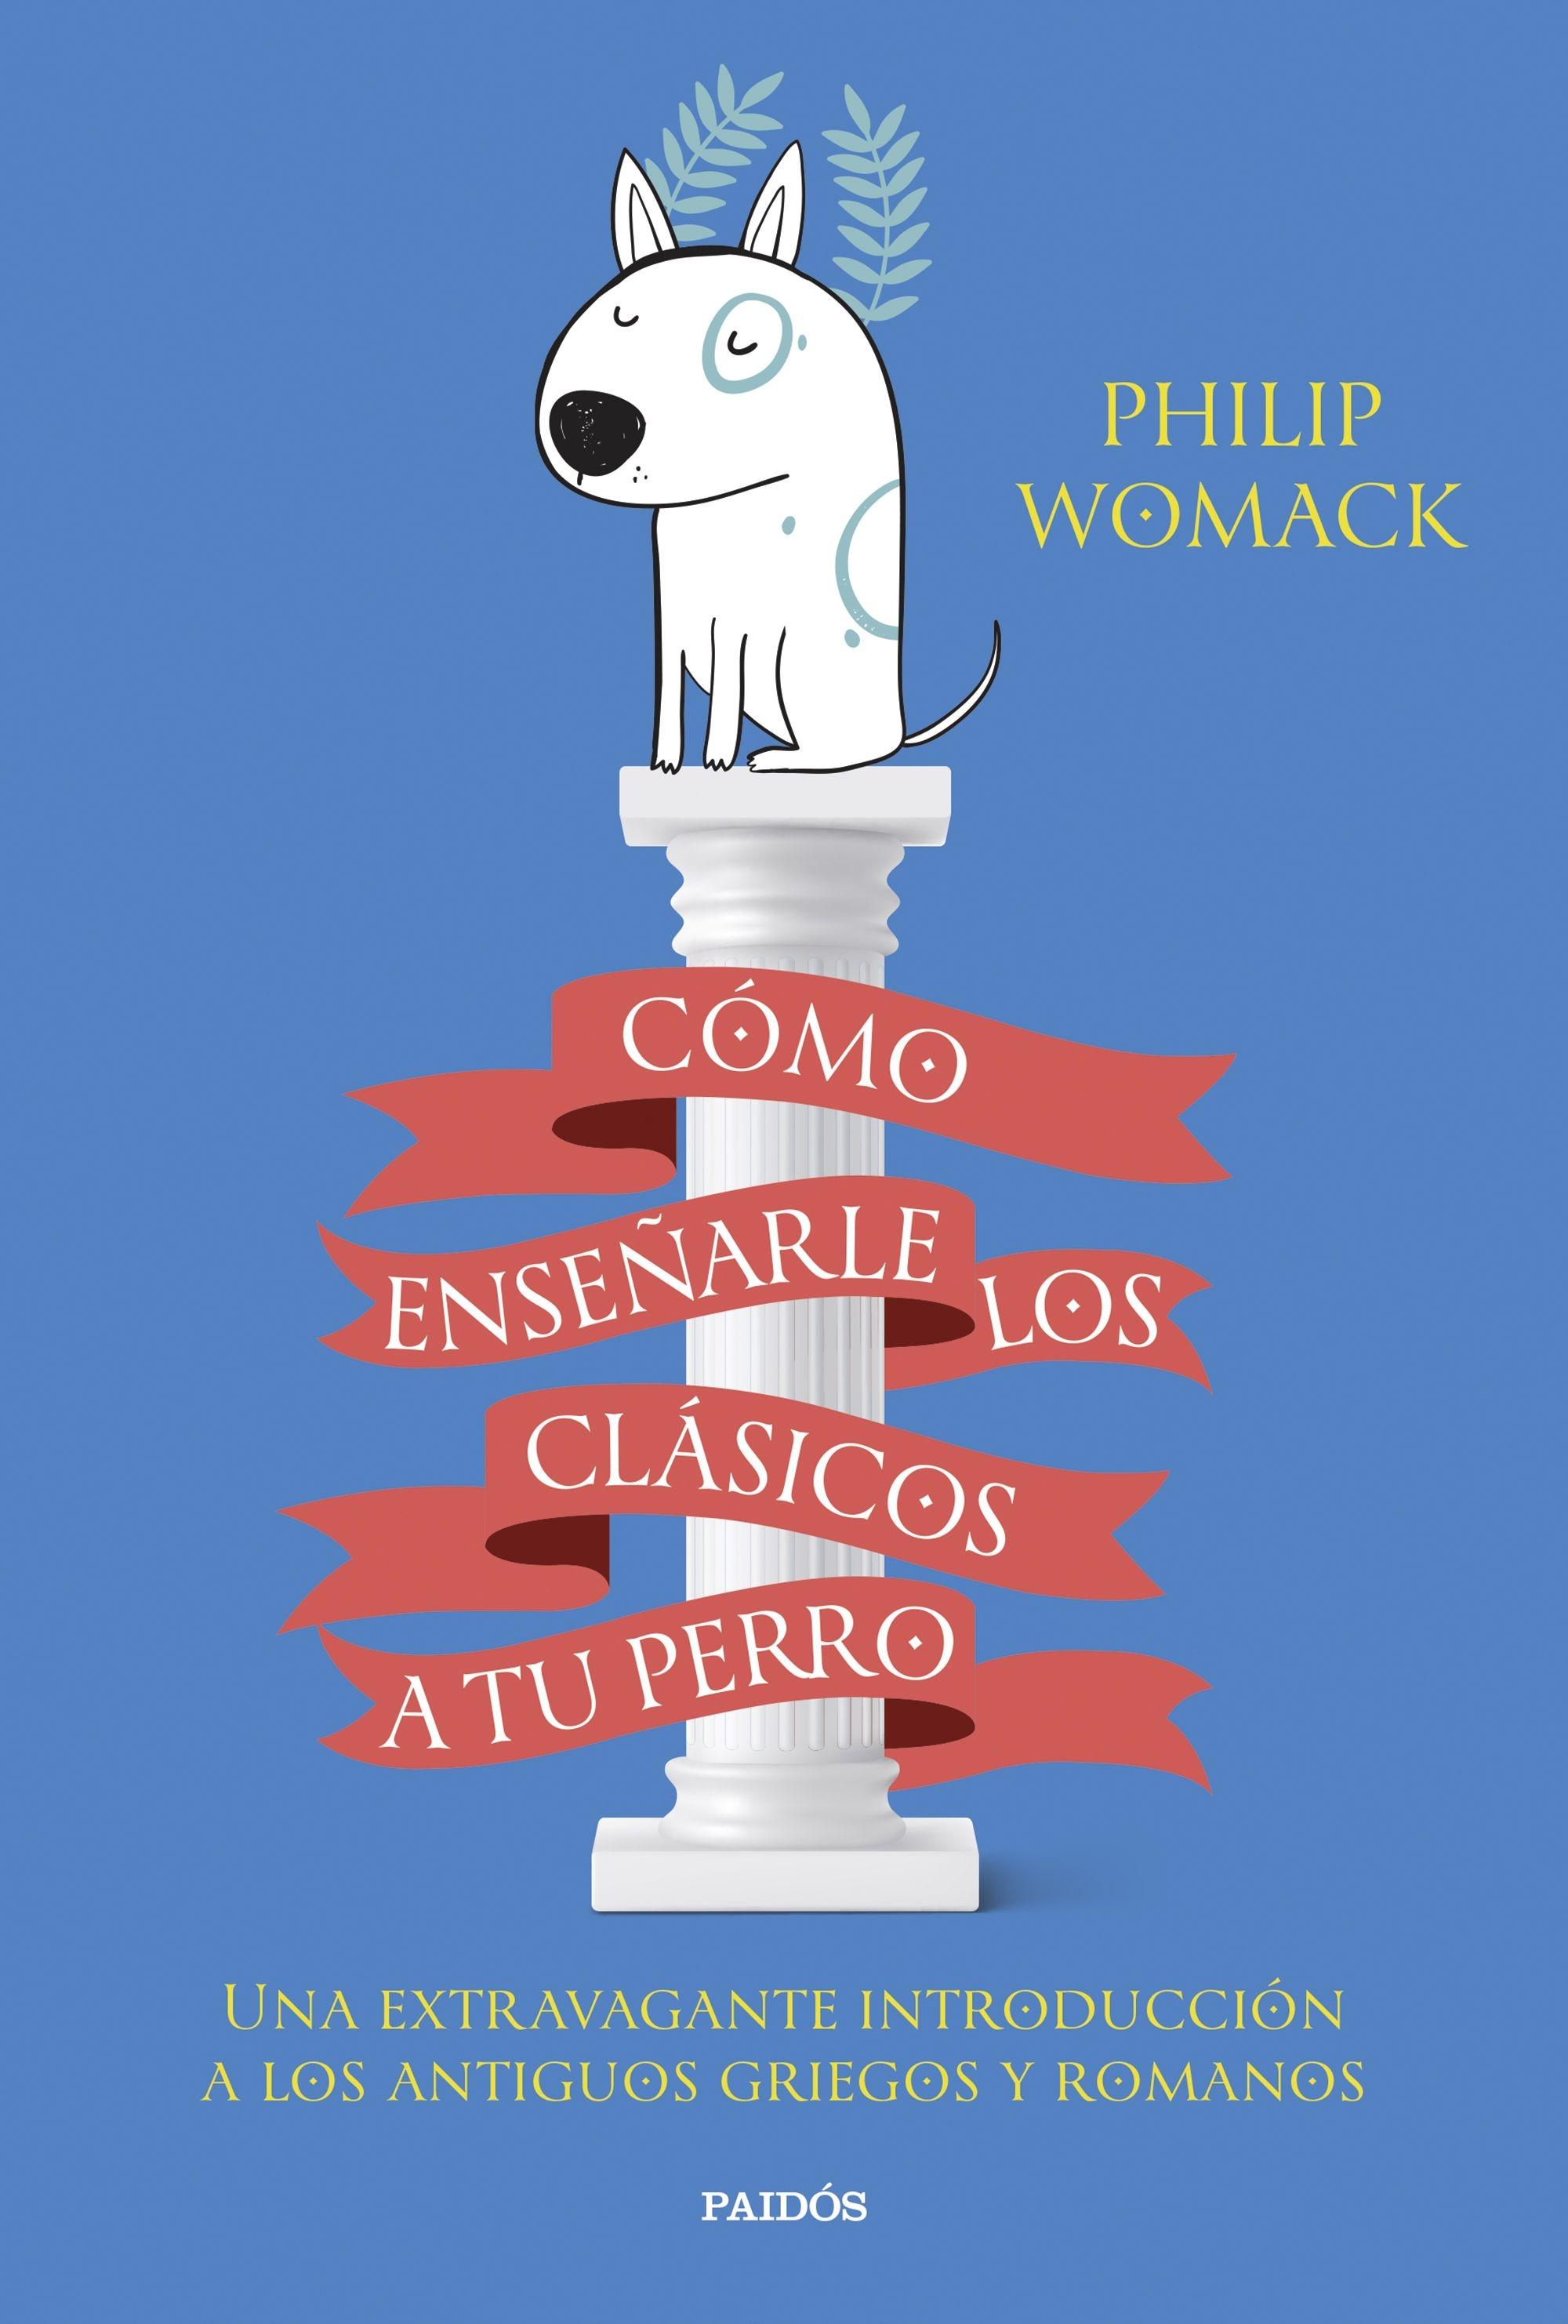 Cómo Enseñarle los Clásicos a tu Perro "Una Extravagante Introducción a los Antiguos Griegos y Romanos". 